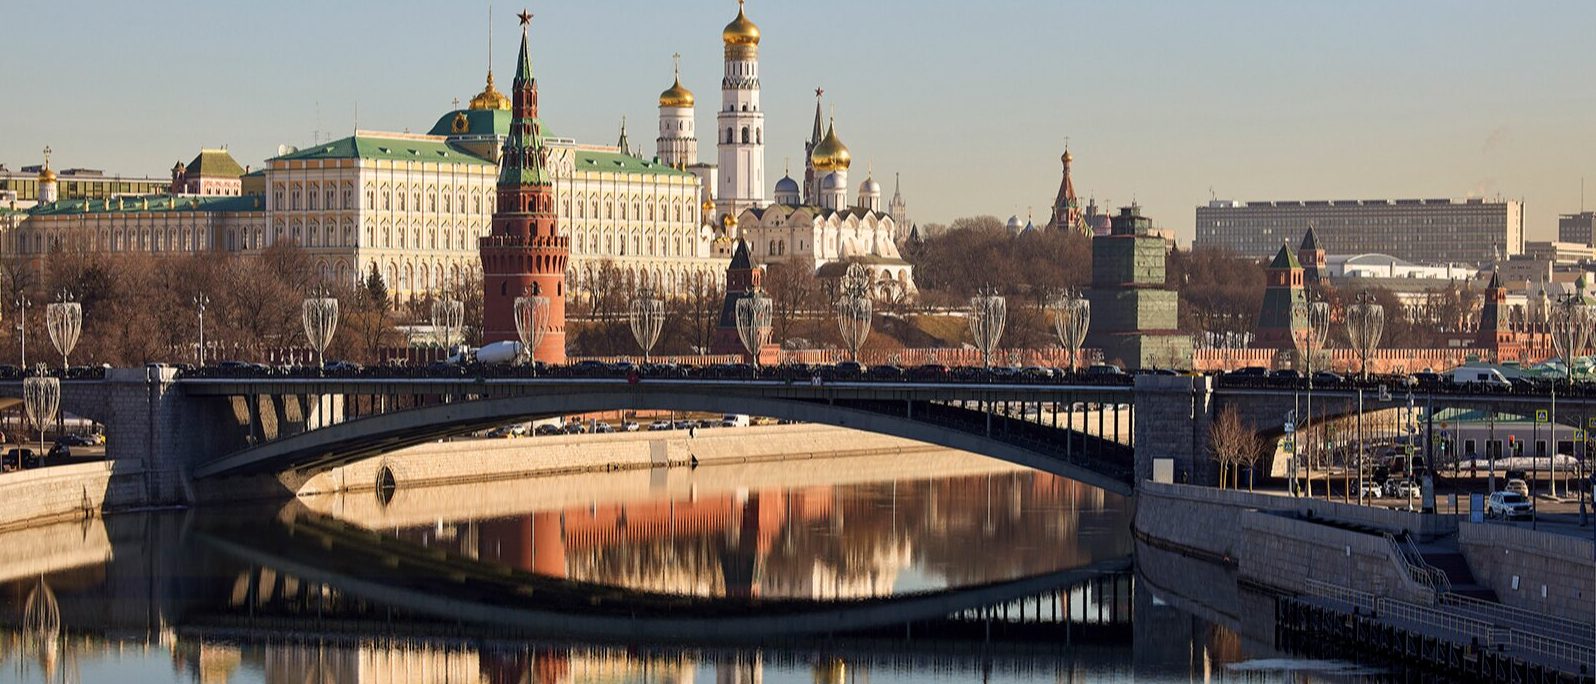 Всего специалисты планируют привести в порядок 78 набережных. Фото: сайт мэра Москвы